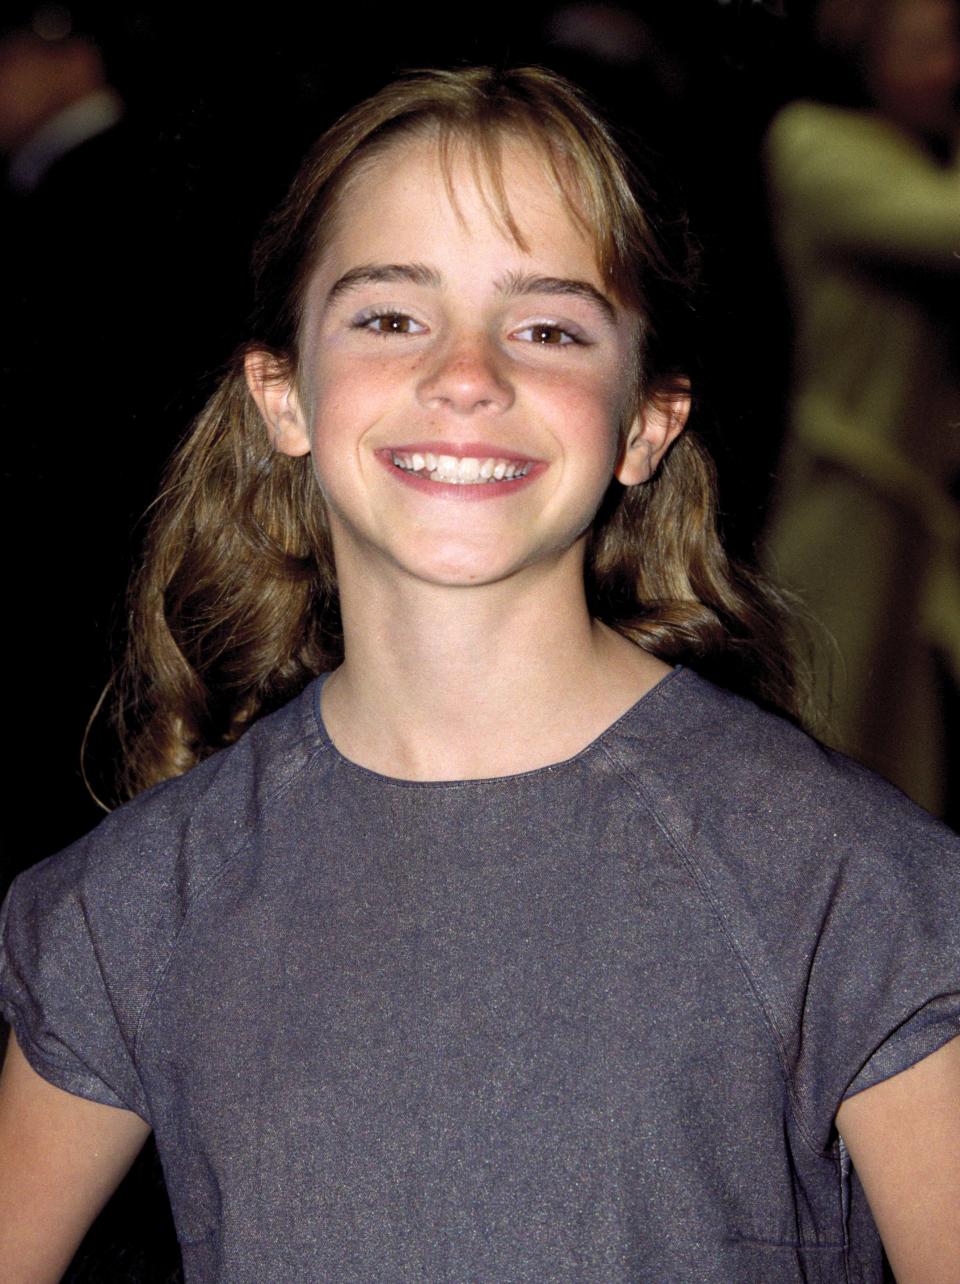 EN IMAGES – Emma Watson fête ses 29 ans, retour sur la carrière de l’une des actrices les plus adulées au monde